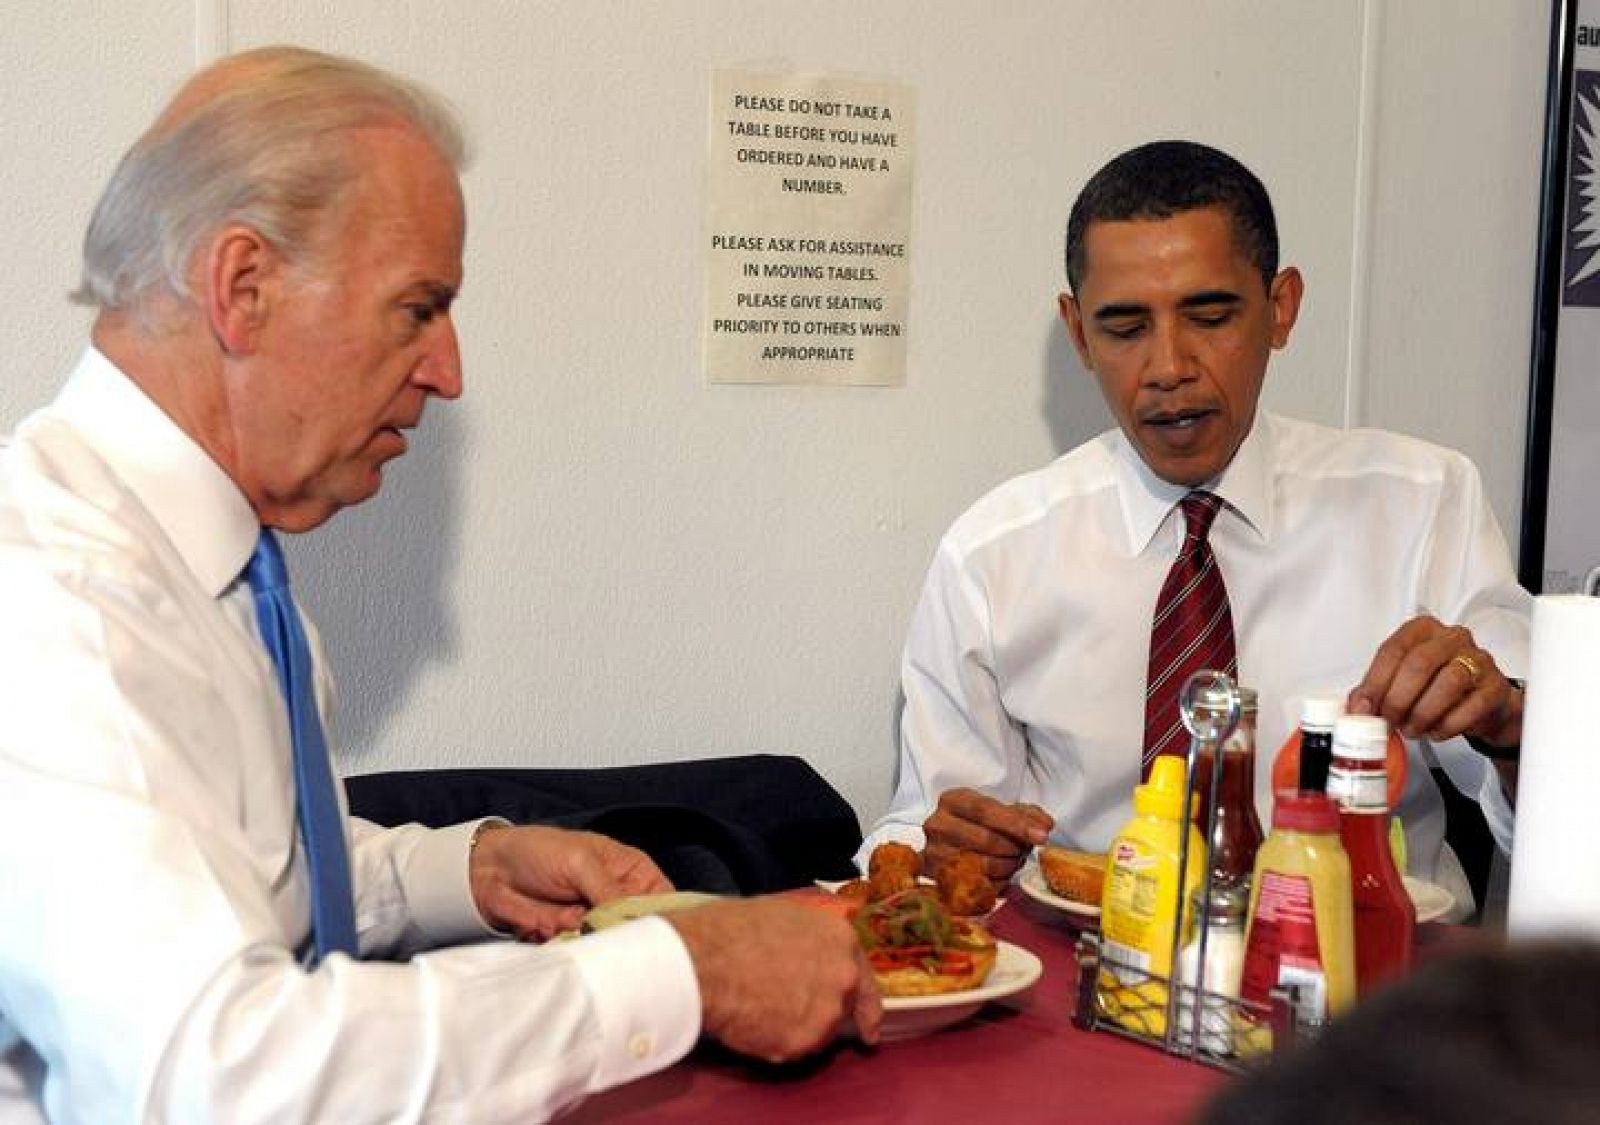 El vicepresidente de EE.UU. y su jefe en el Ray's Hell Burger, a las afueras de Washington.